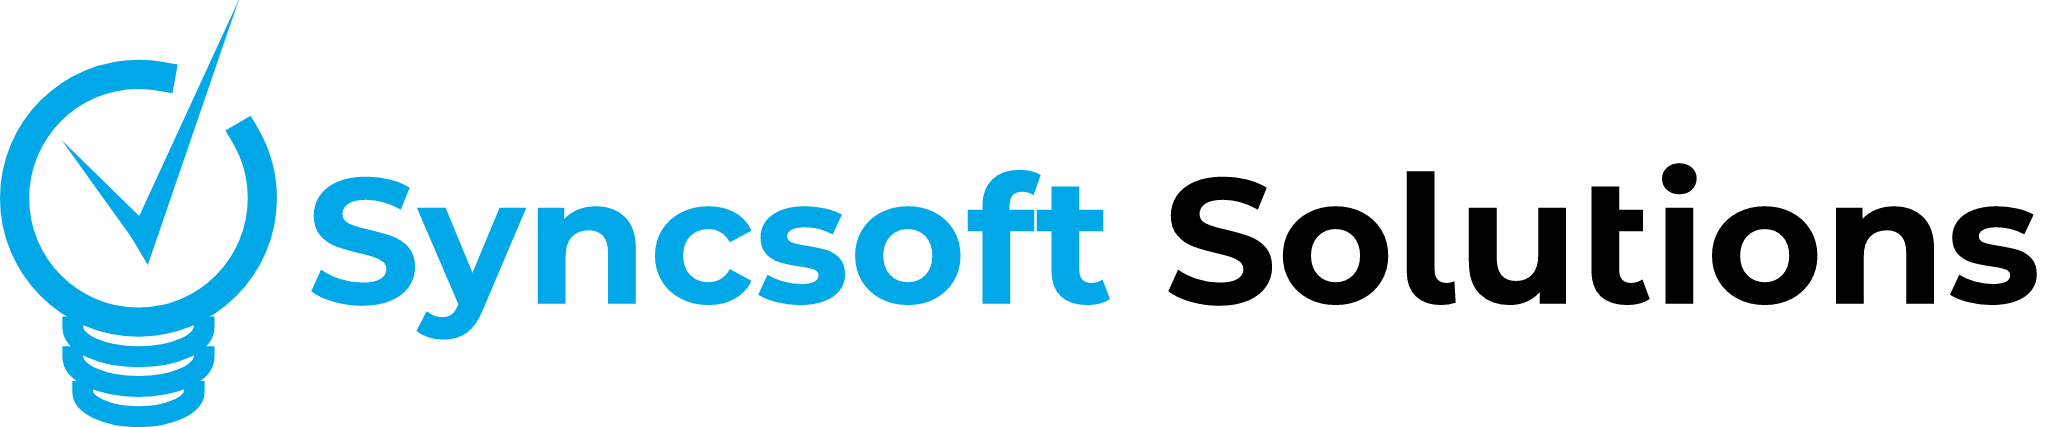 syncsoft logo